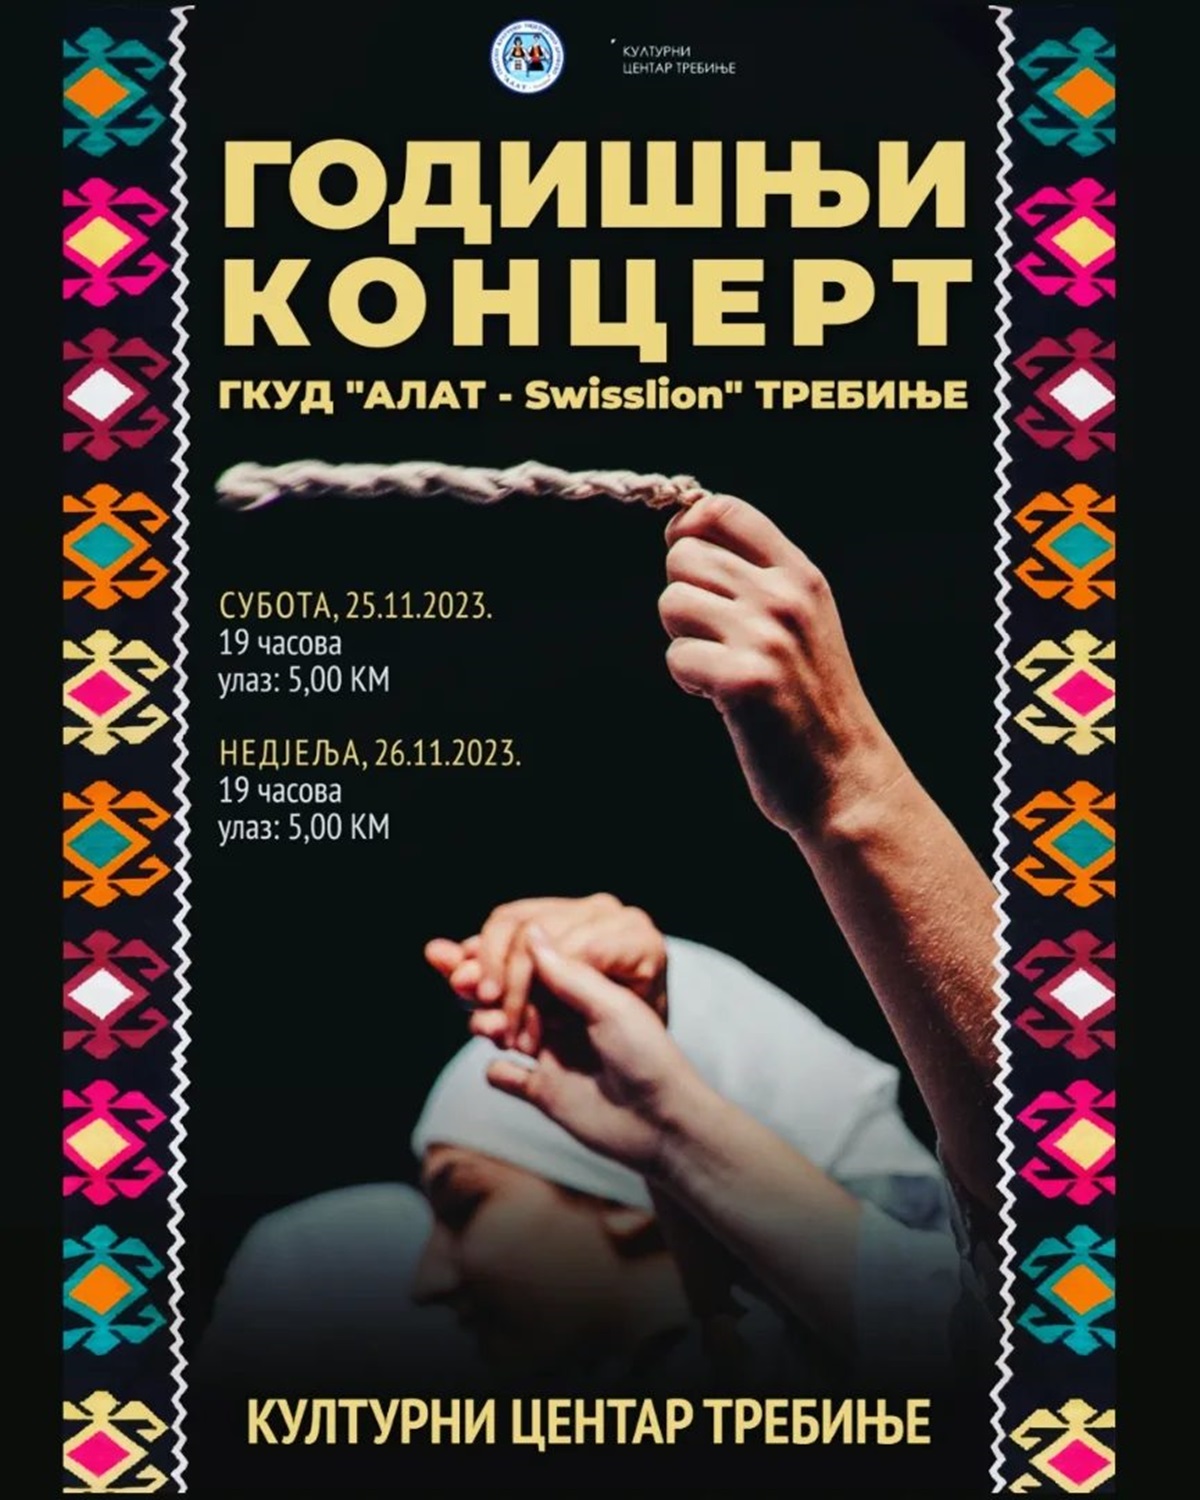 Најава: Годишњи концерт ГКУД „Алат Свислајон“